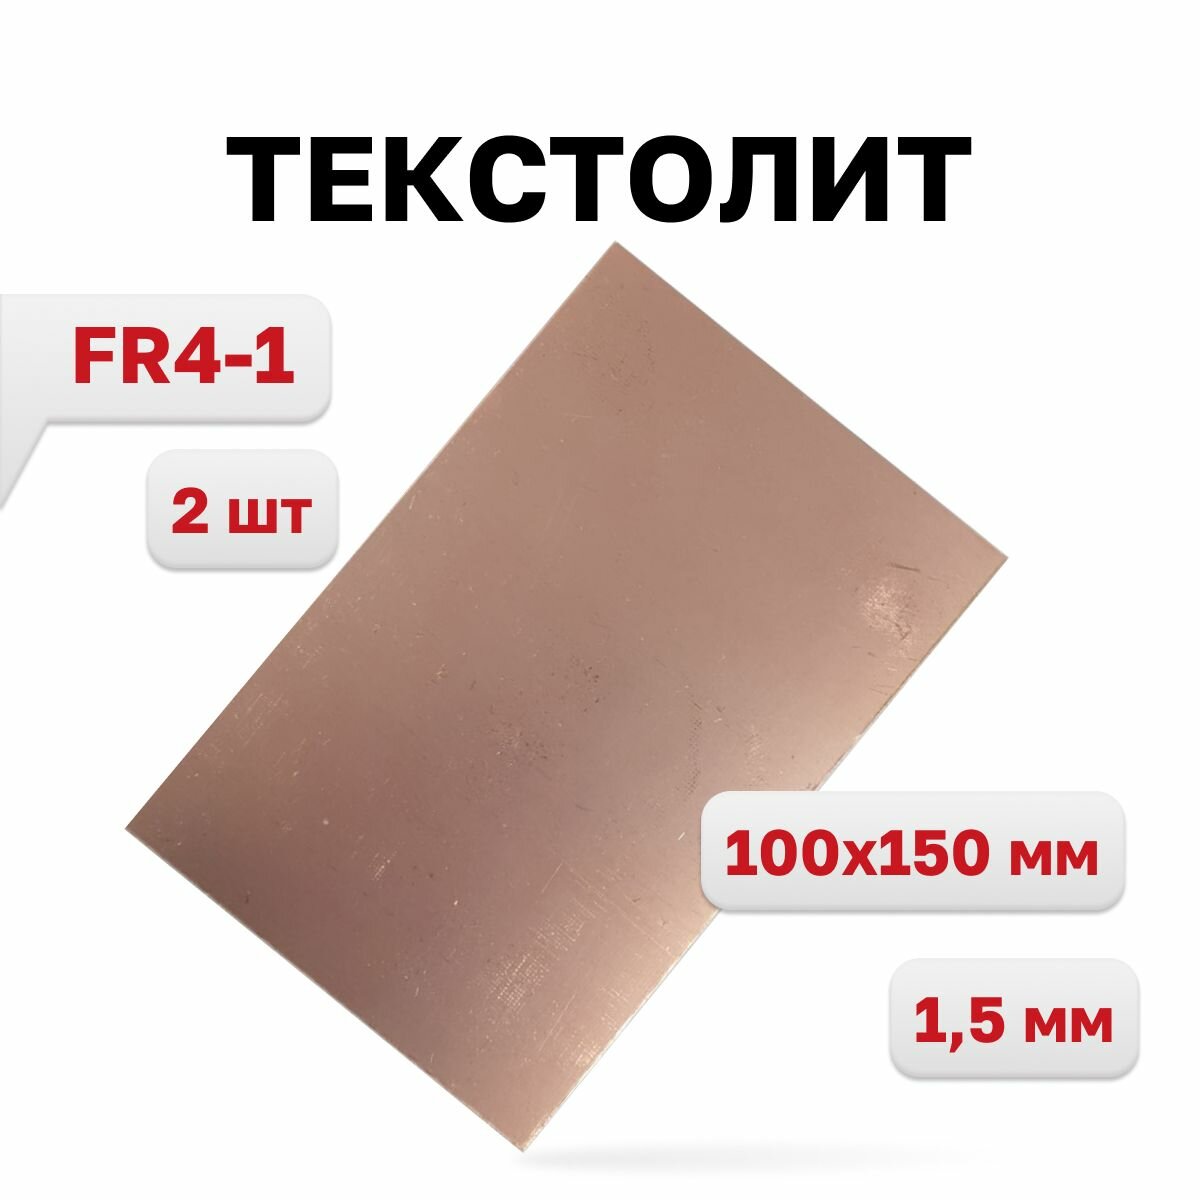 Текстолит FR4-1 1,5 мм, 100 x 150 мм, 2 шт.